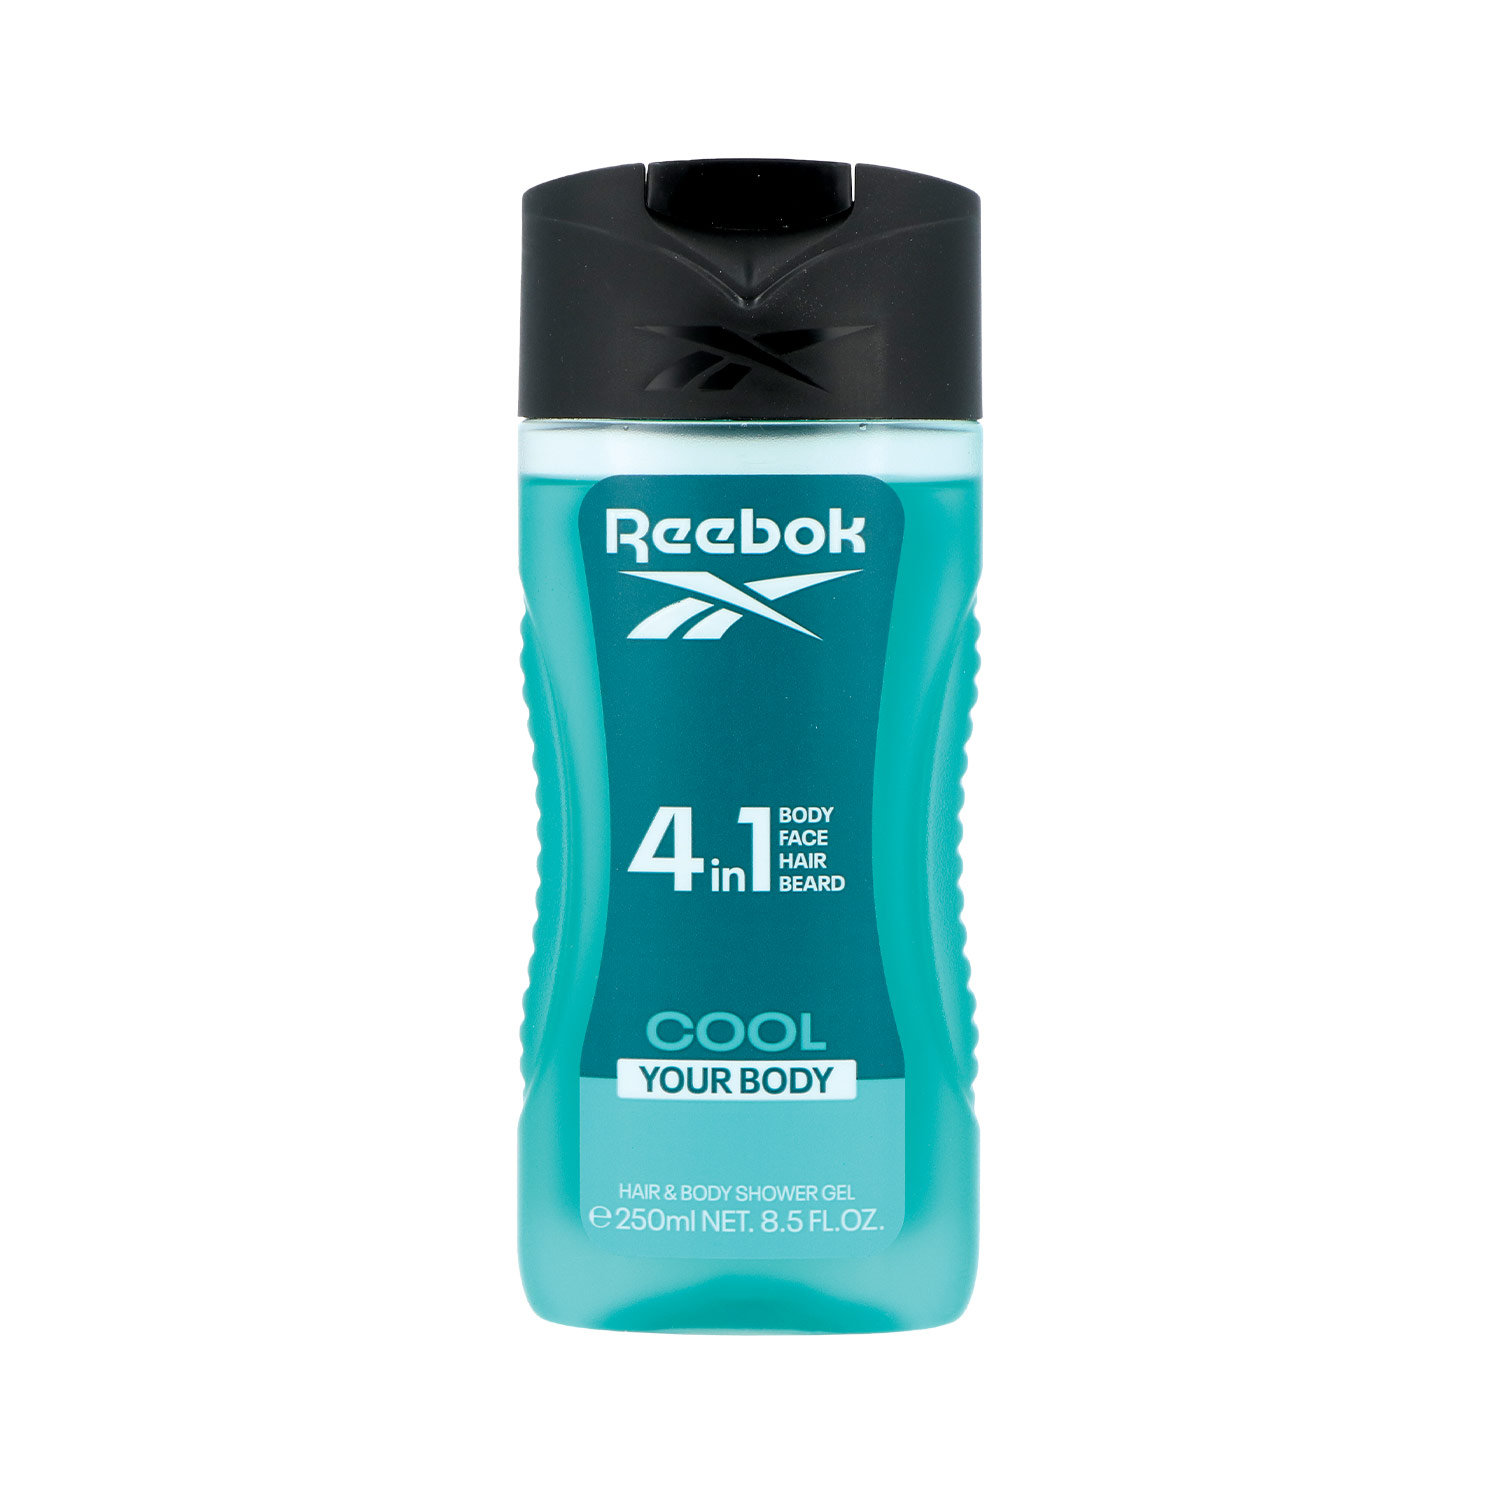 Reebok Duschgel for Men 4 in 1 Cool your Body 250 ml